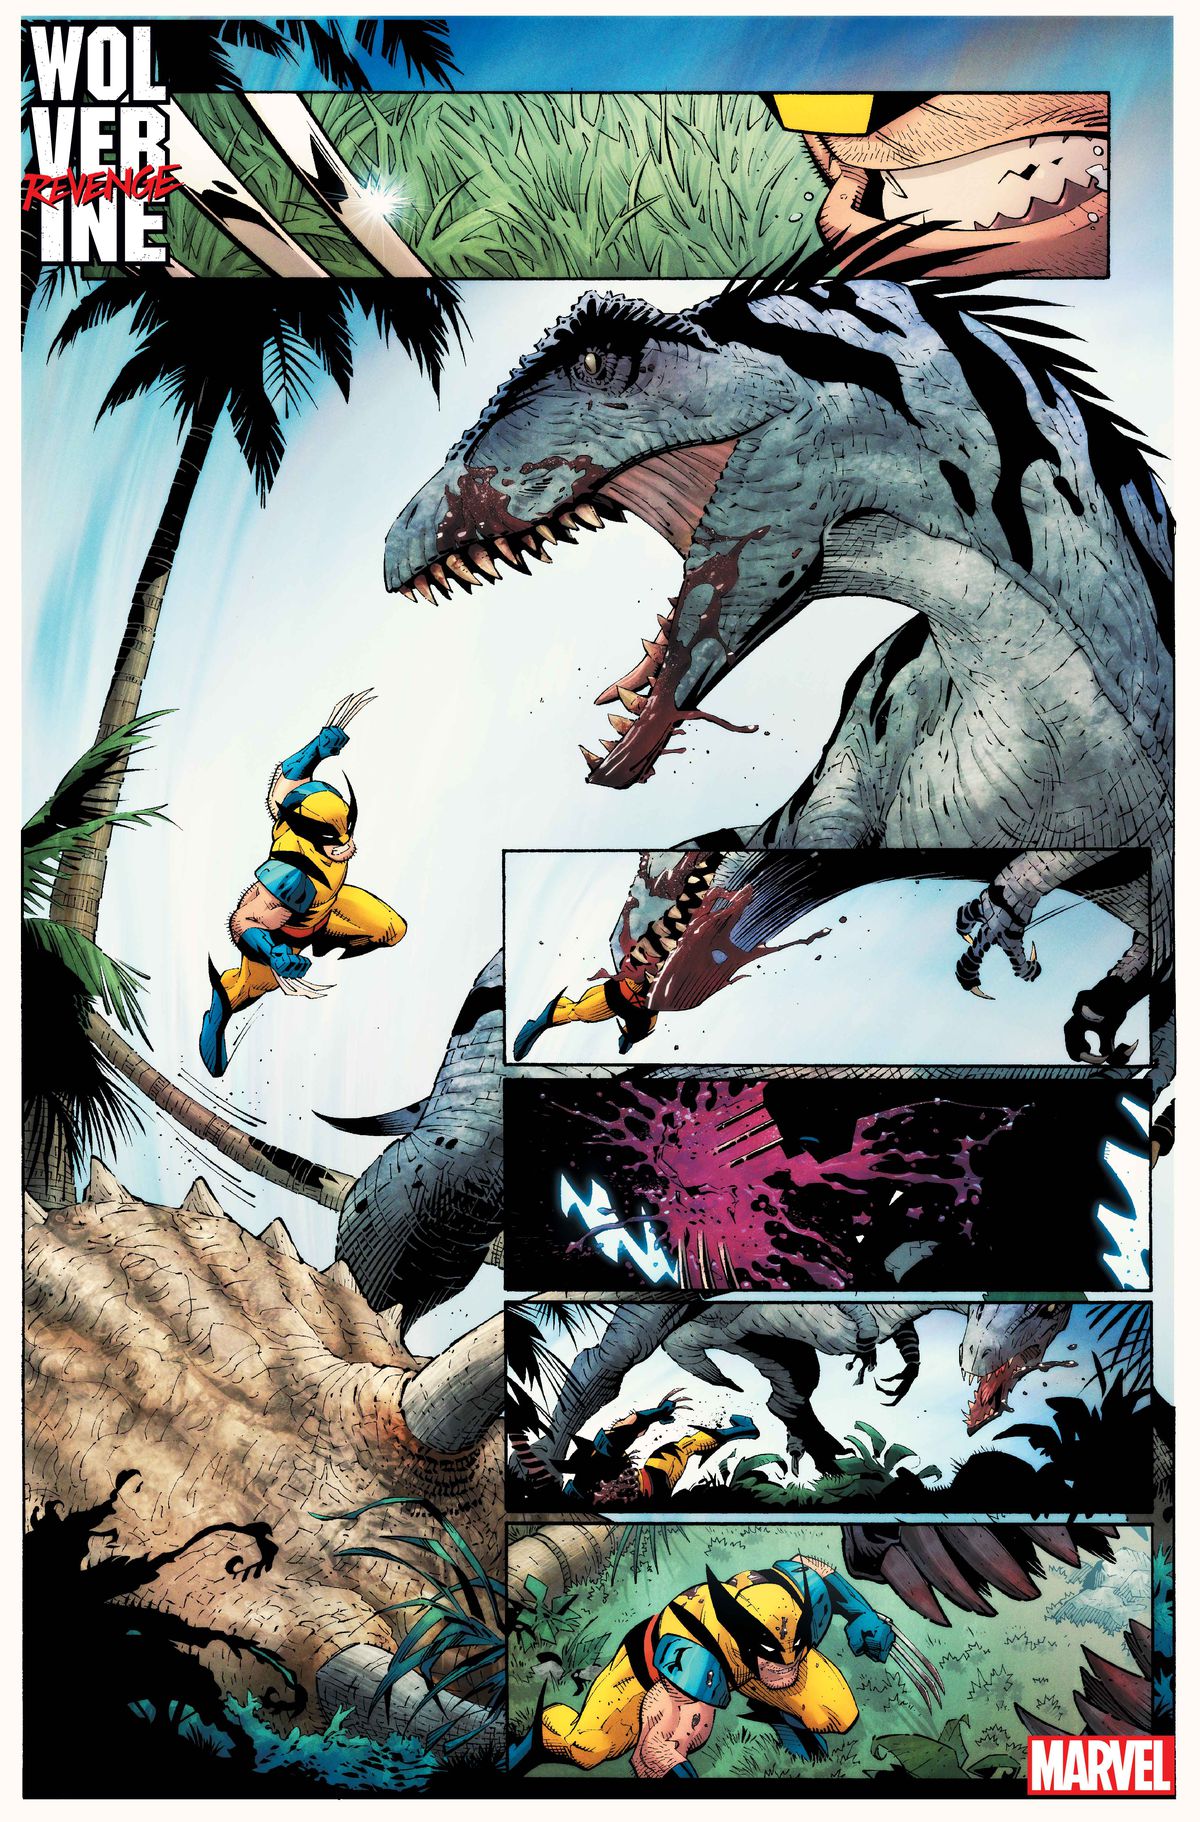 Wolverine wysuwa pazury i skacze na dinozaura typu terapod, stojącego nad świeżym zabitym triceratopsem.  Łapie Wolverine'a w szczękach, ale potem wypluwa go, gdy Wolverine przecina go pazurami, w Wolverine: Revenge #1.